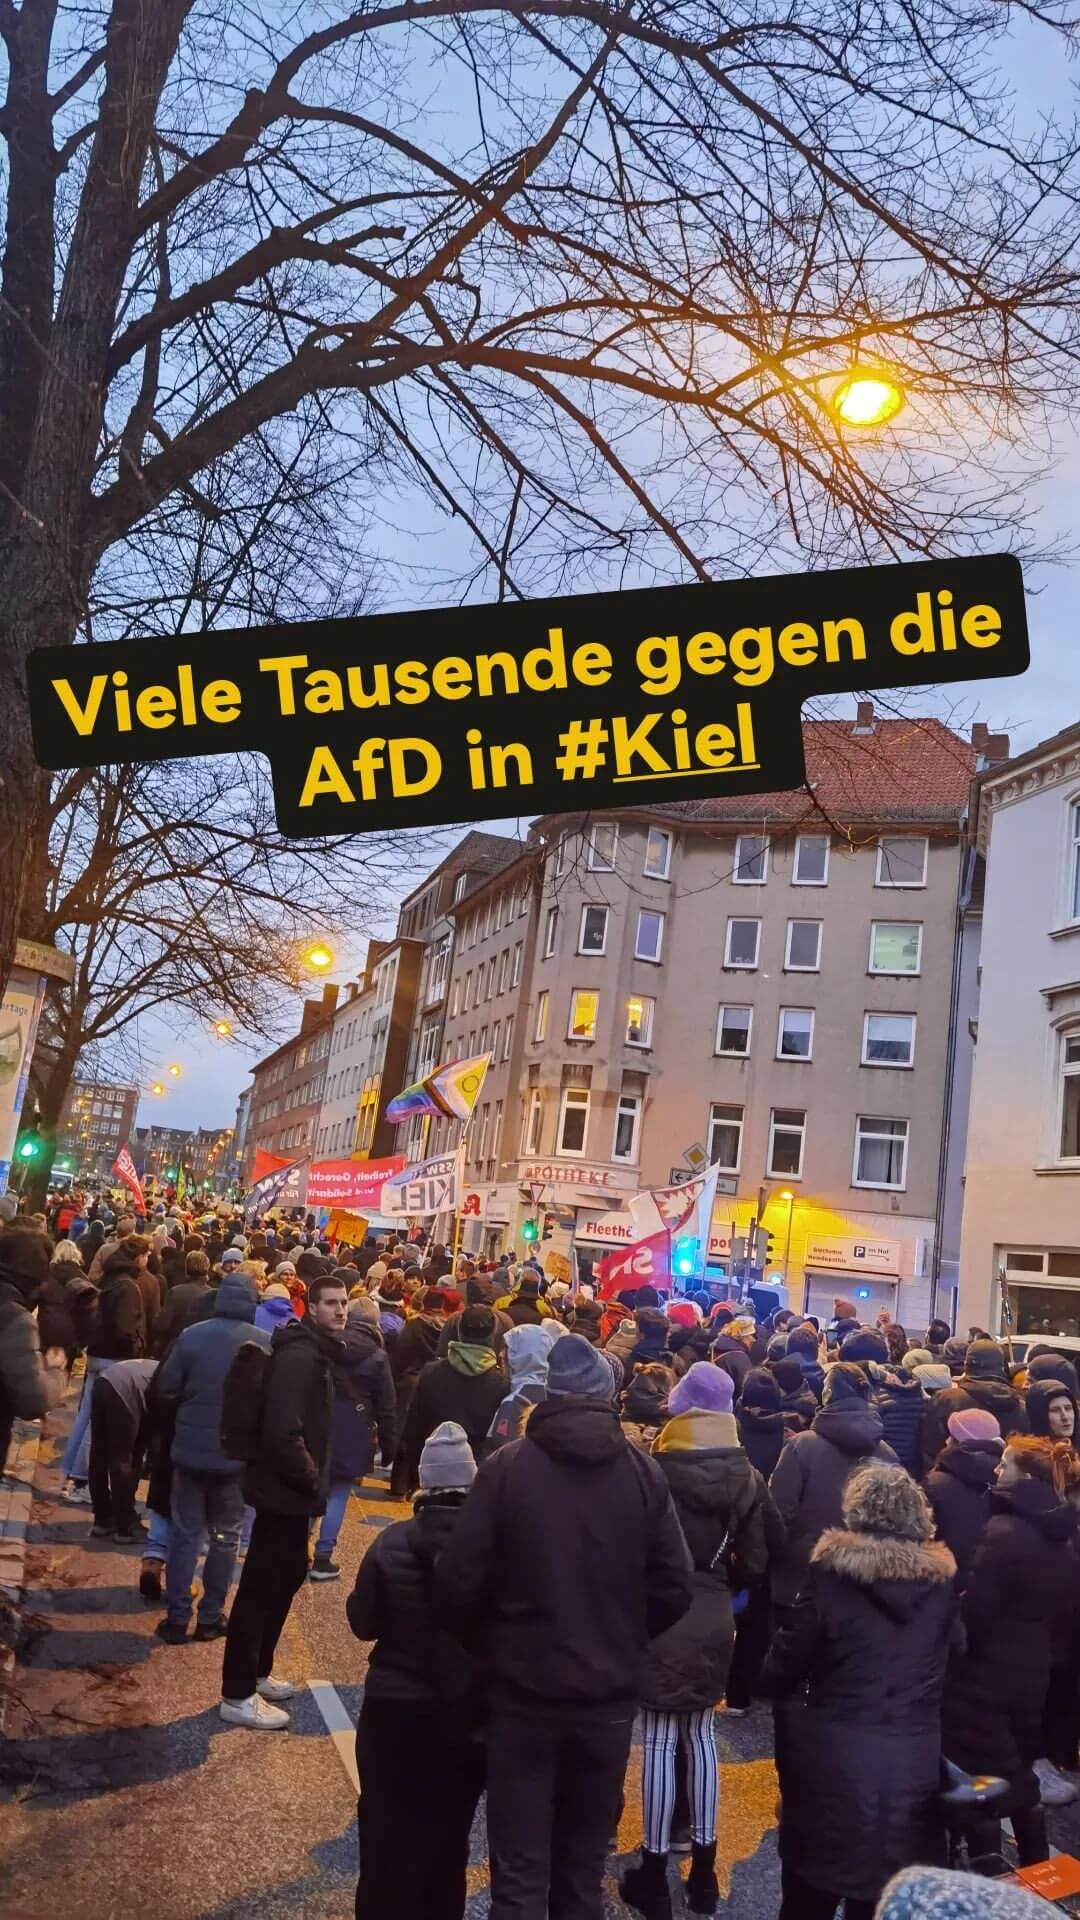 Zu sehen sind tausende Menschen im Knooper Weg in Kiel während einer Demonstration gegen das Erstarken faschistischer Kräfte. Dazu folgender Text: Viele Tausend gegen die AfD in #Kiel.